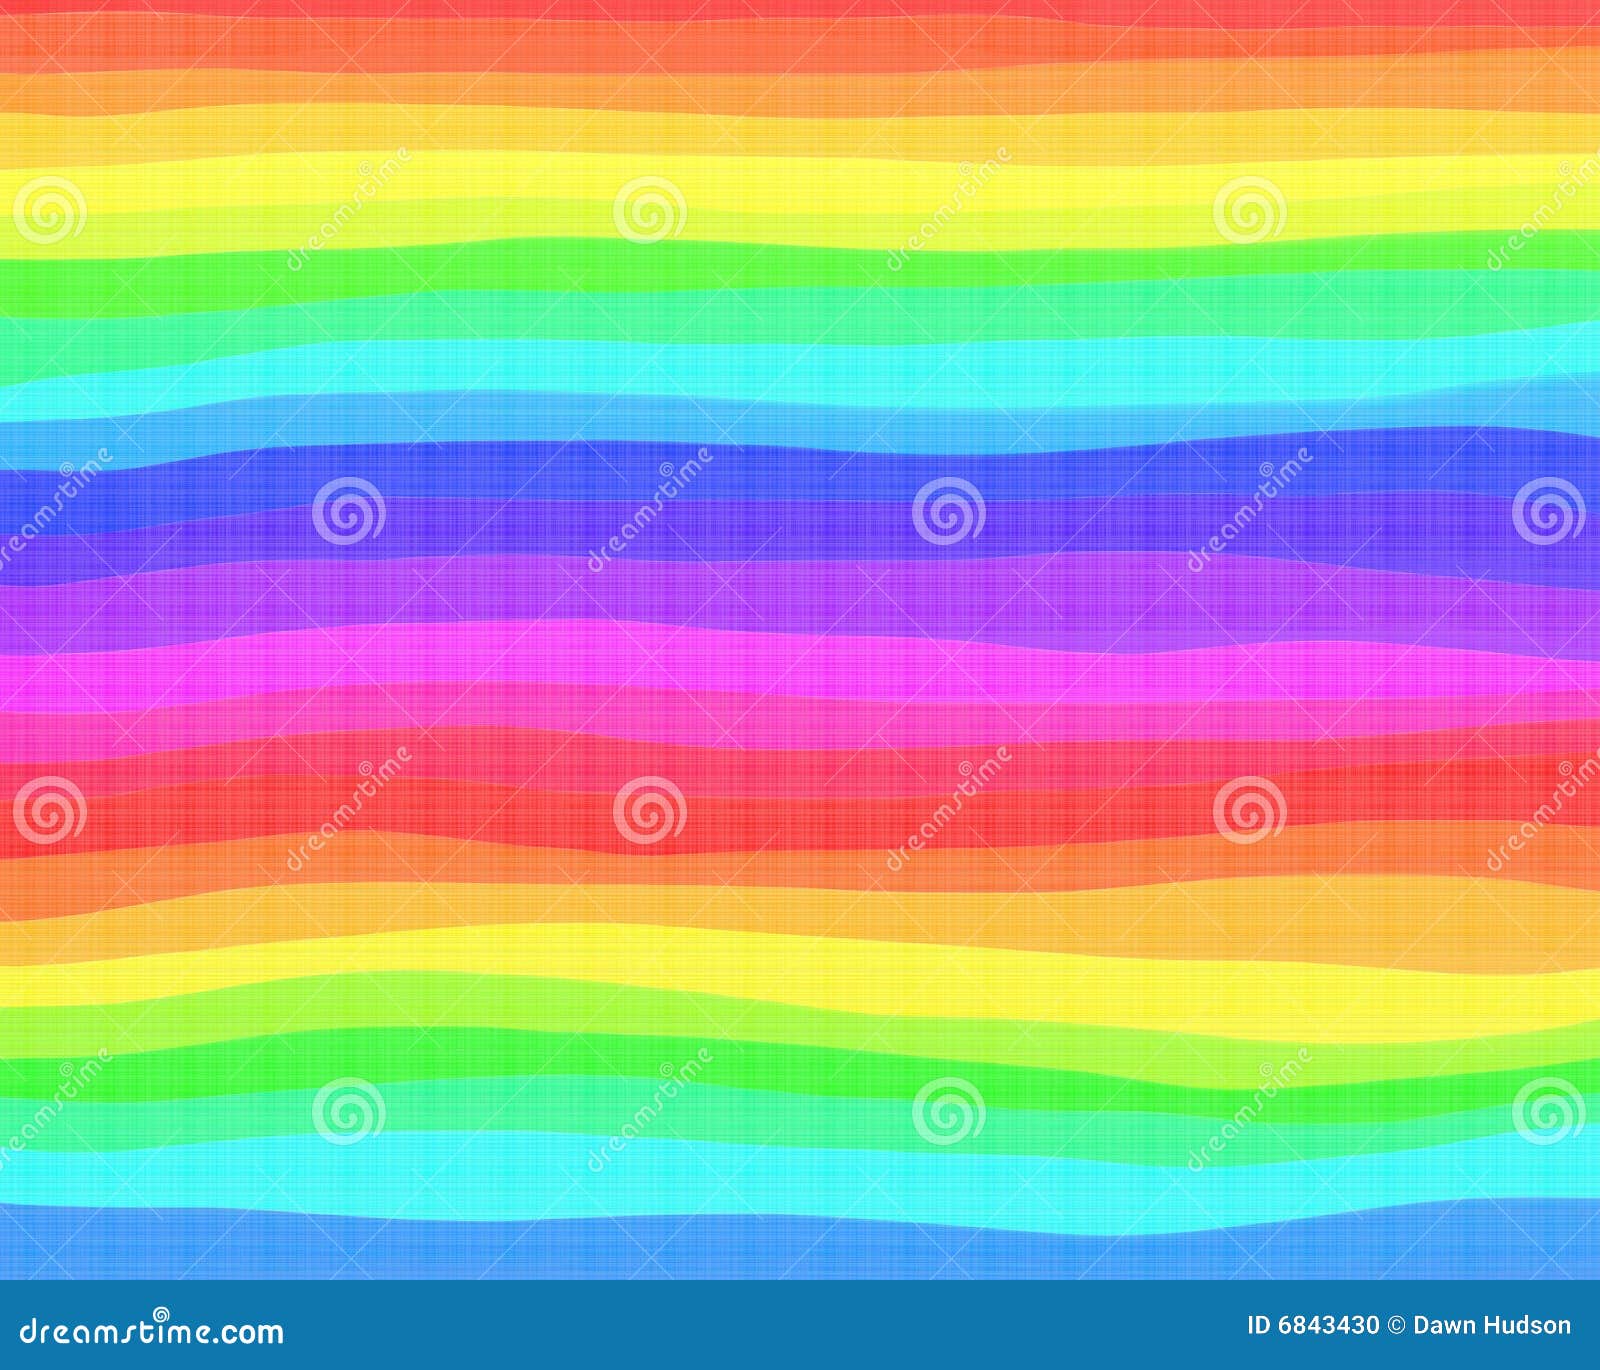 Rainbow background stock illustration. Illustration of background - 6843430